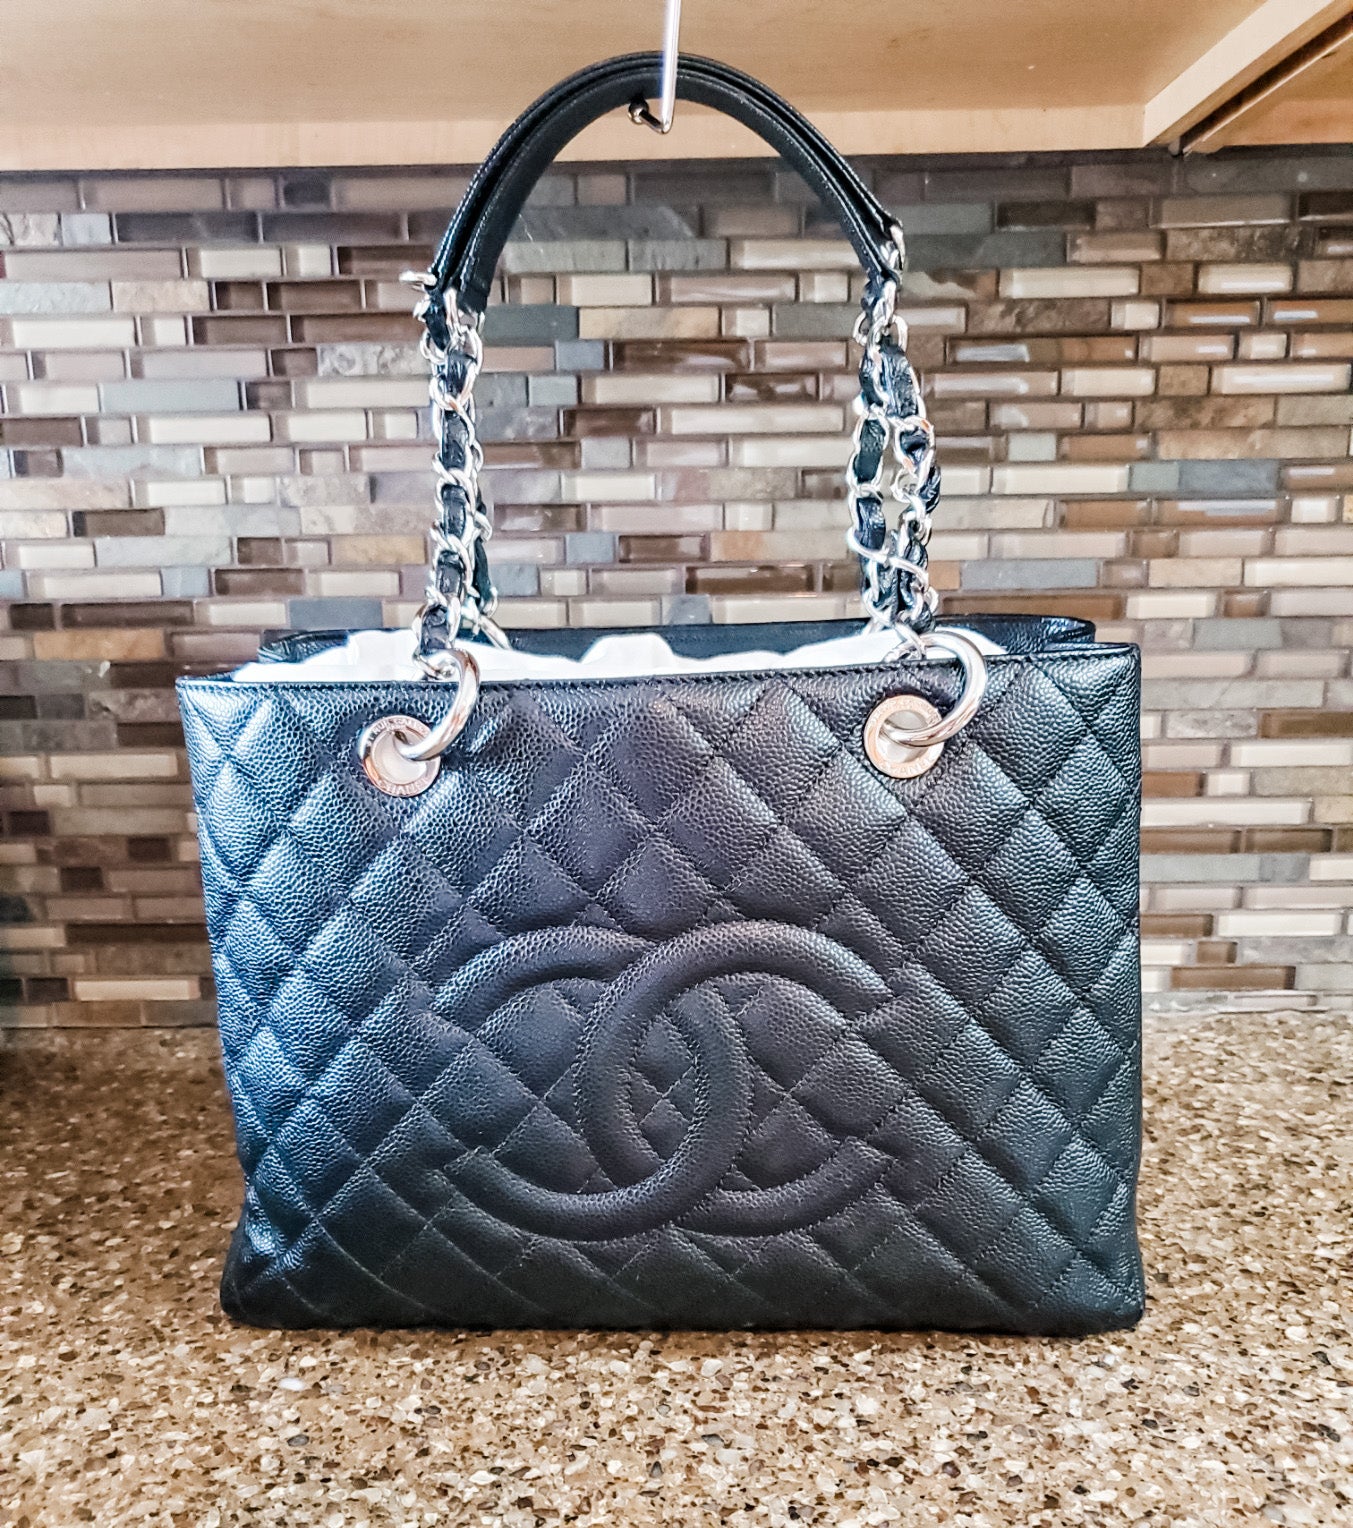 Chanel grand shopping tote (GST) Dodi Insert – The Dodi Handbag Insert